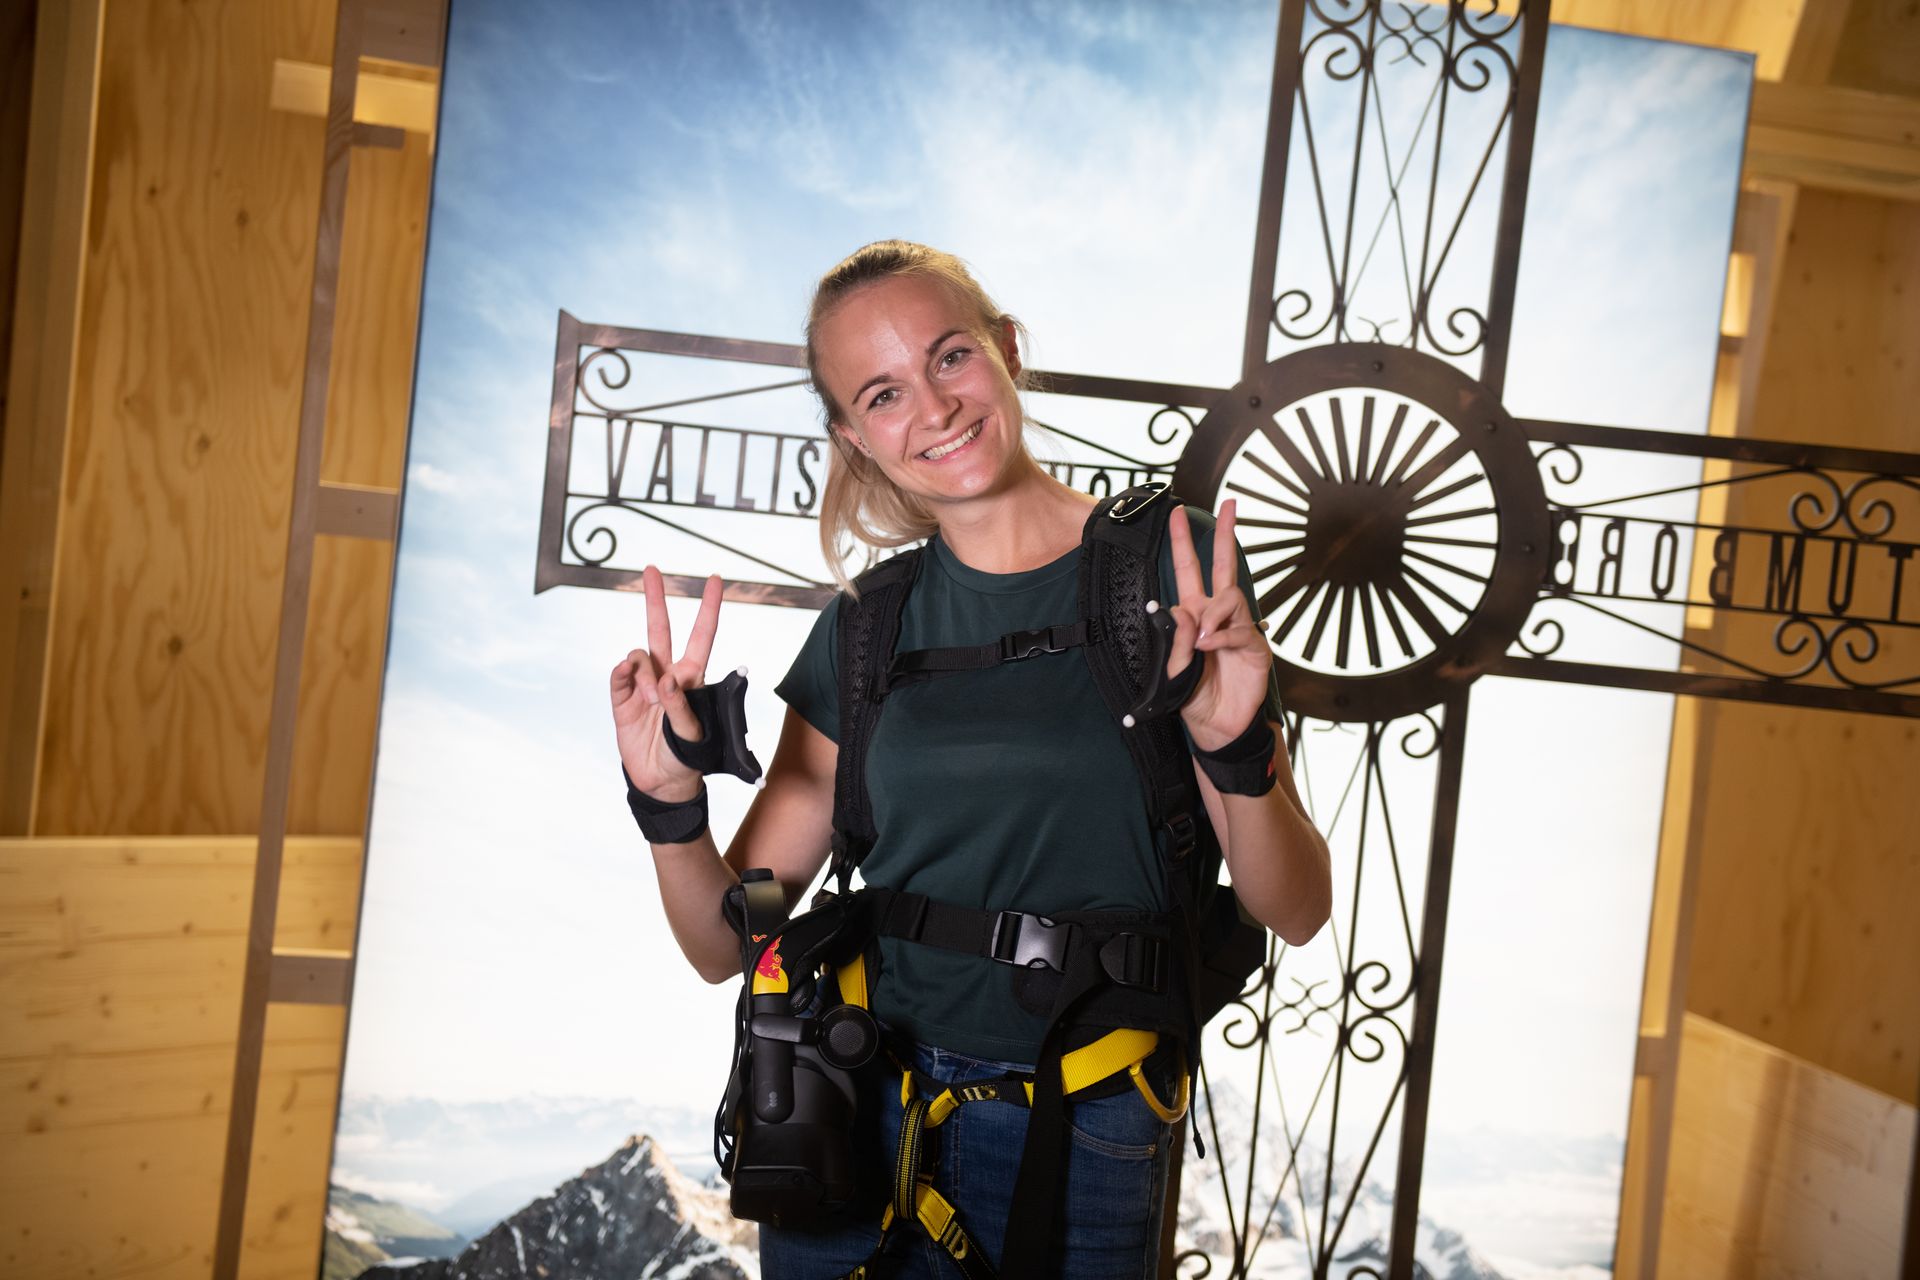 В Швейцарском музее транспорта в Люцерне можно виртуально совершить восхождение на Маттерхорн, «вооружившись» очками виртуальной реальности и снаряжением для скалолазания: это инициатива Red Bull Switzerland и различных партнеров под названием «The Edge Matterhorn». VR», посредством которого было воспроизведено реальное восхождение альпинистов Джереми Хейтца и Сэма Антаматтена, горных проводников Церматта, а также обеспечены 4D-эффекты ветра, вибраций, текстур и многочисленных объектов или элементов сцены.